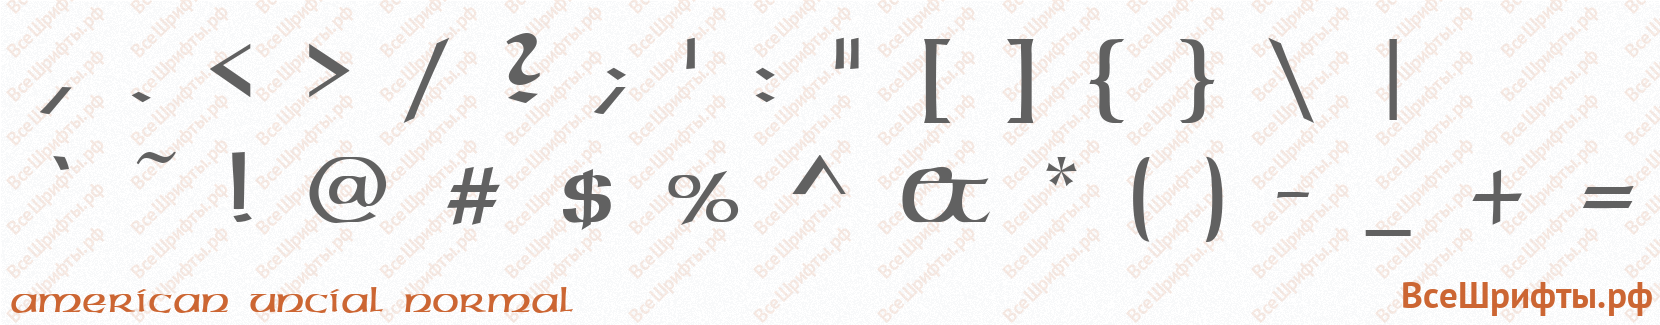 Шрифт American Uncial Normal со знаками препинания и пунктуации